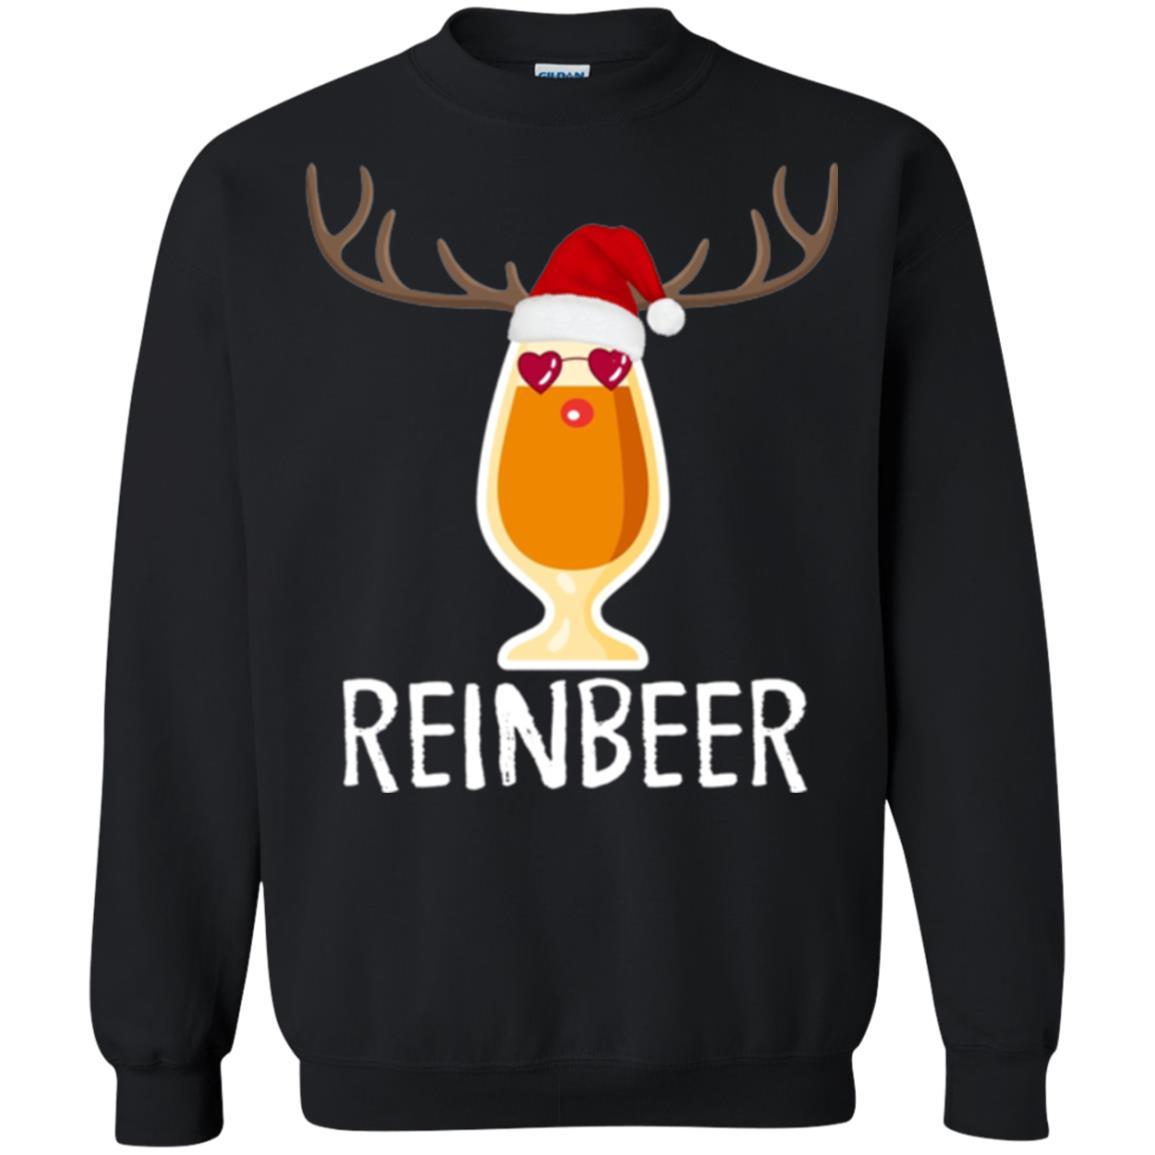 Beer Lover T-shirt Reinbeer Mery Christmas